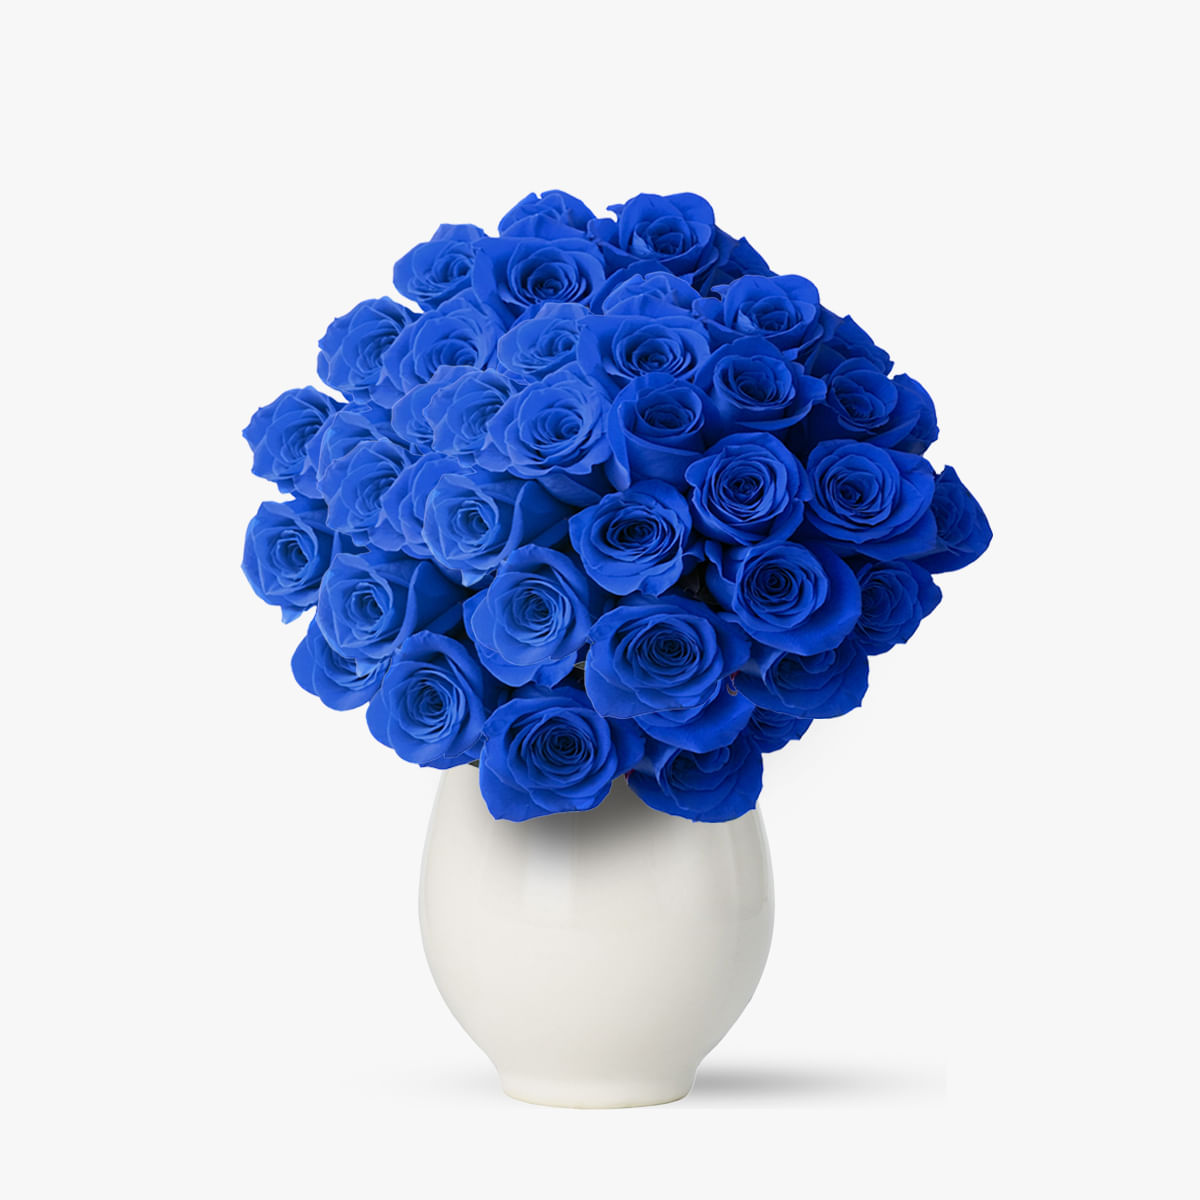 Buchet 101 trandafiri albastri floria.ro